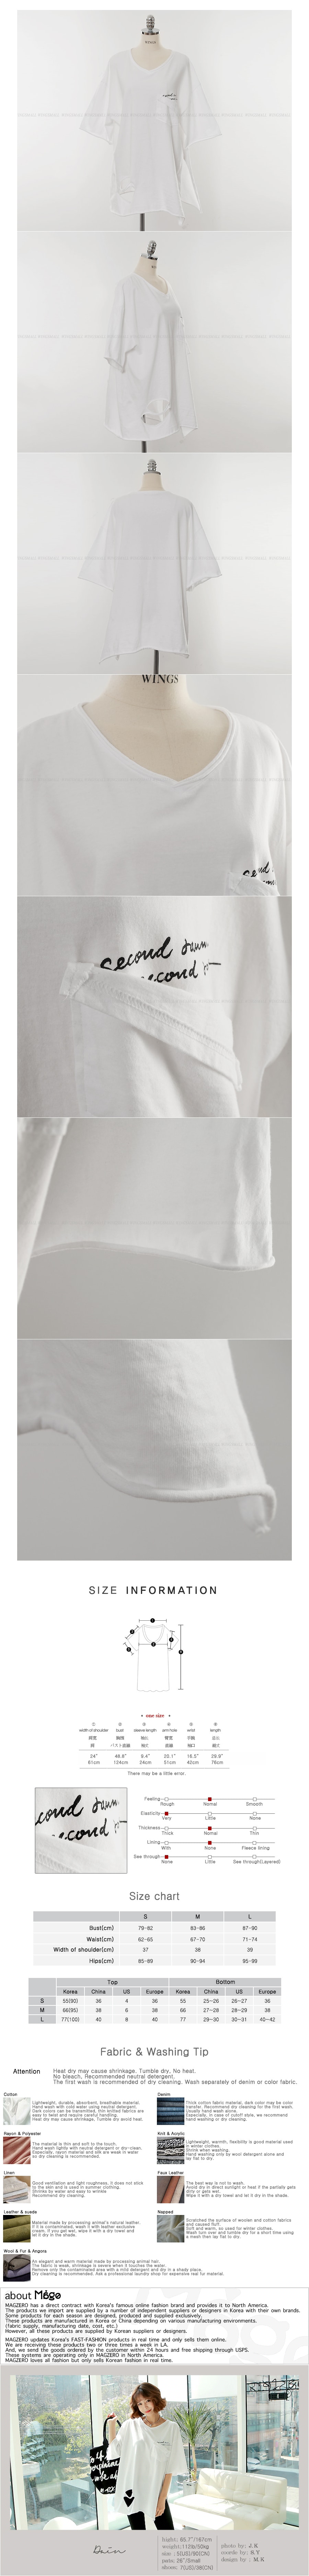 KOREA Destroyed Oversized T-Shirt #White One Size(Free) [Free Shipping]